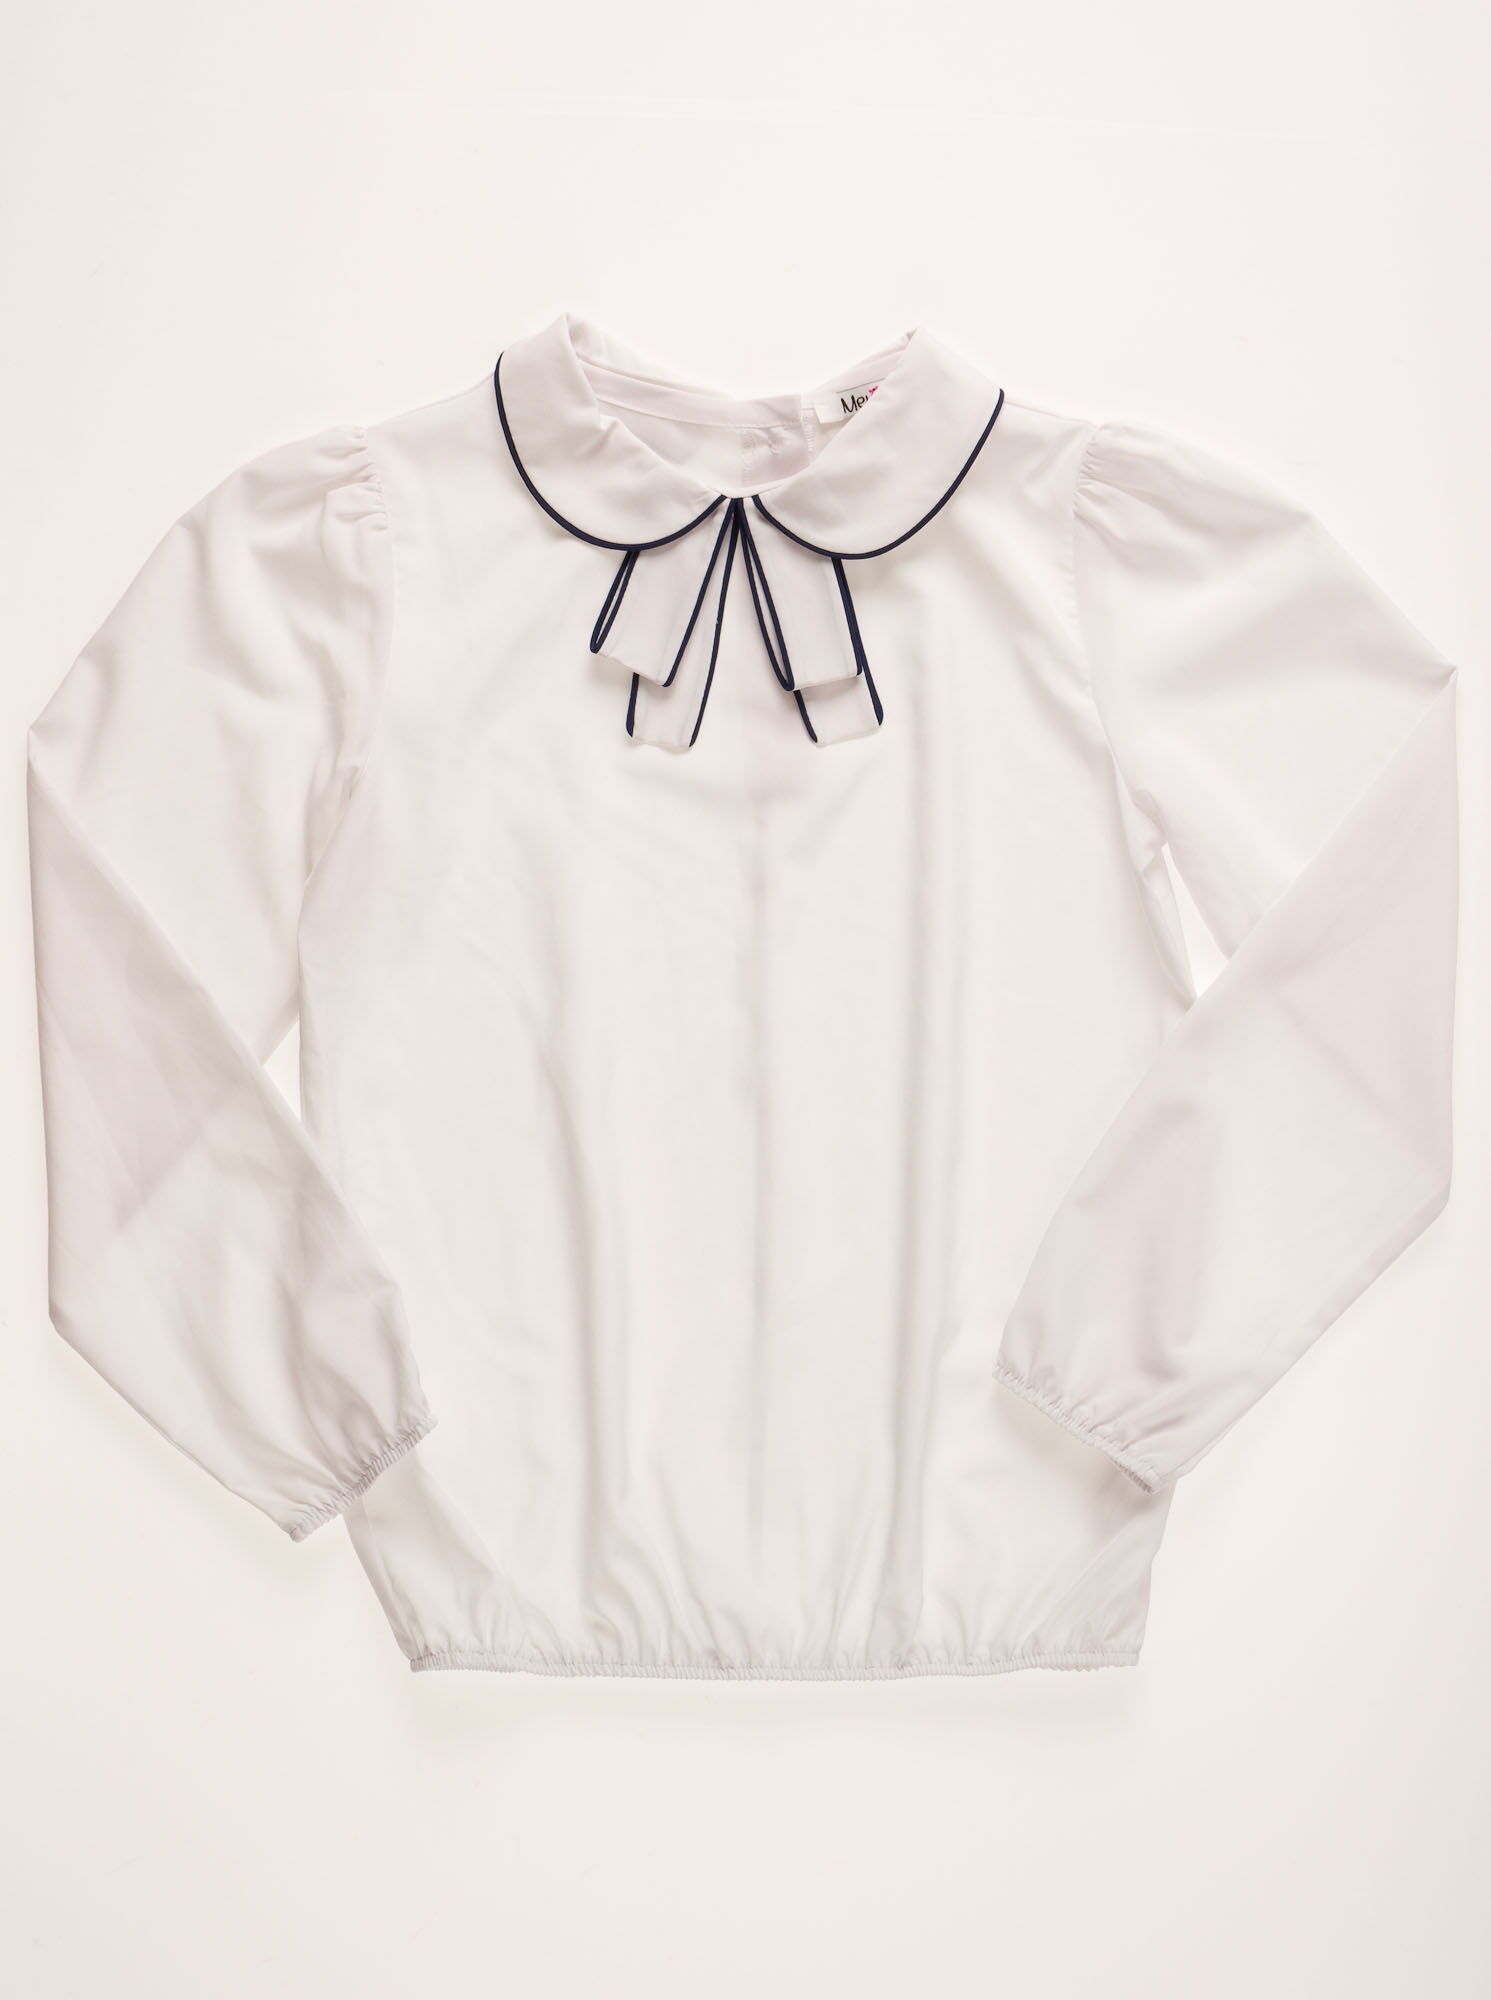 Блузка с длинным рукавом для девочки Mevis белая 2101-02 - цена